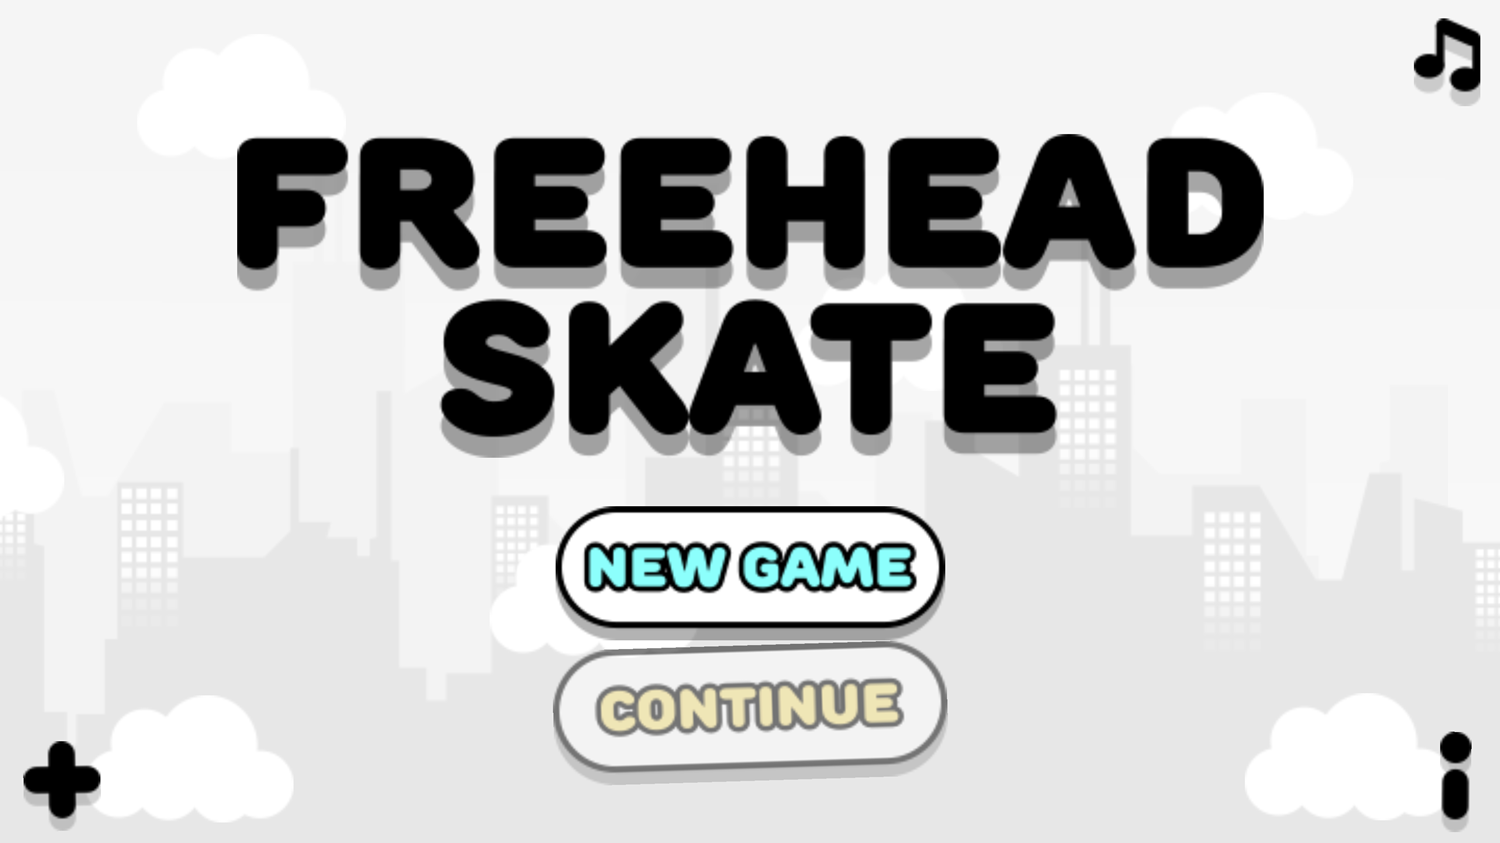 Freehead Skate Game Welcome Screen Screenshot.